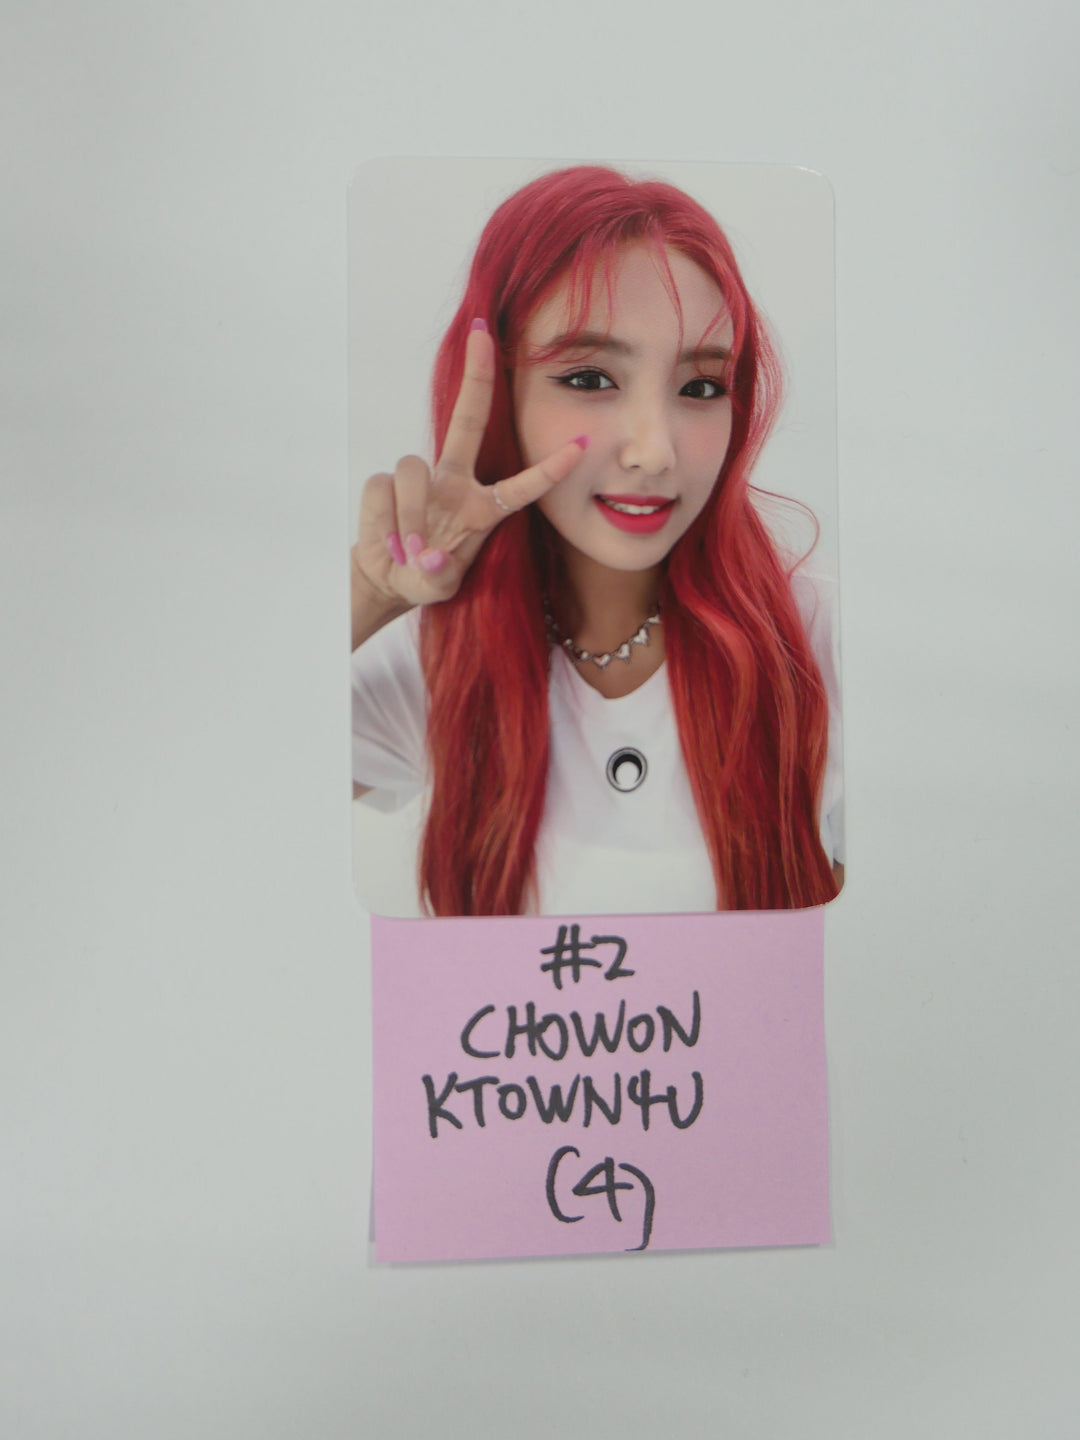 라이트섬 '바닐라' - Ktown4U 팬 사인회 포토카드